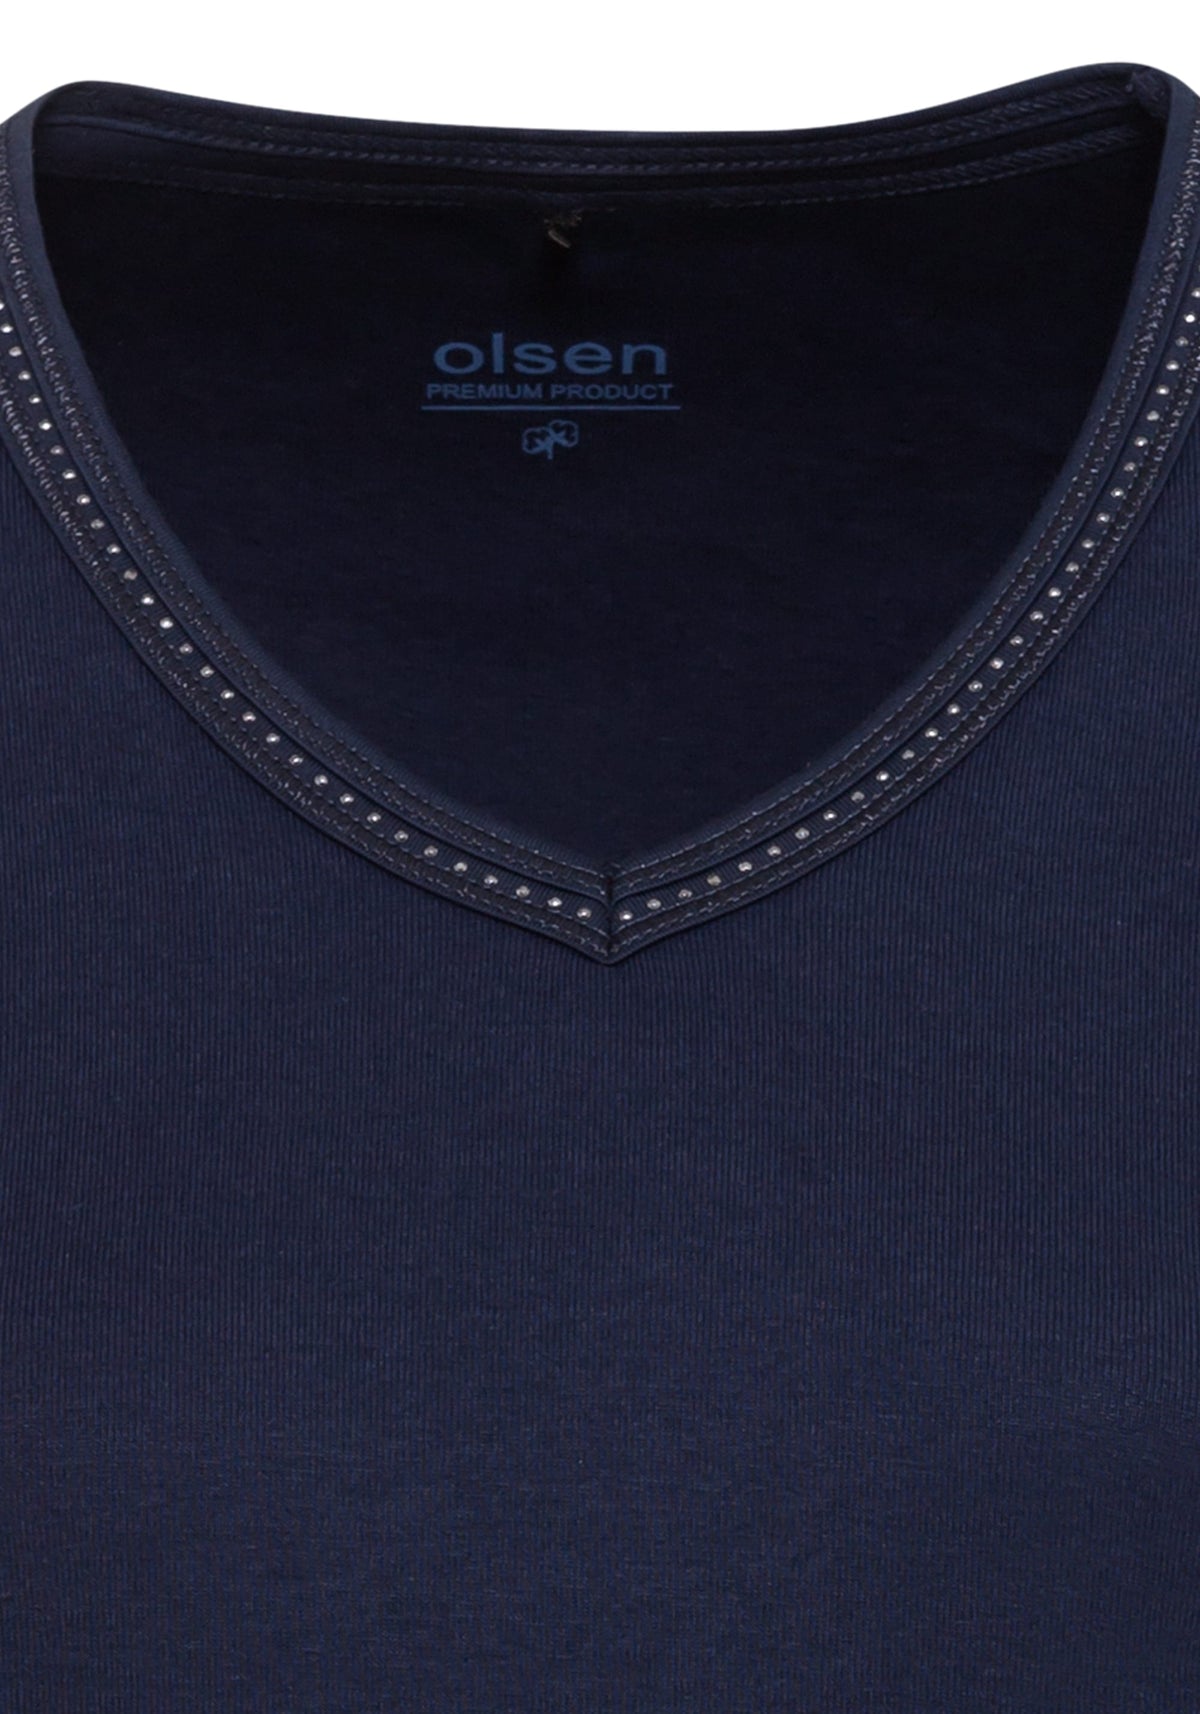 100% Organic Cotton 3/4 Sleeve Embellished V-Neck T-Shirt